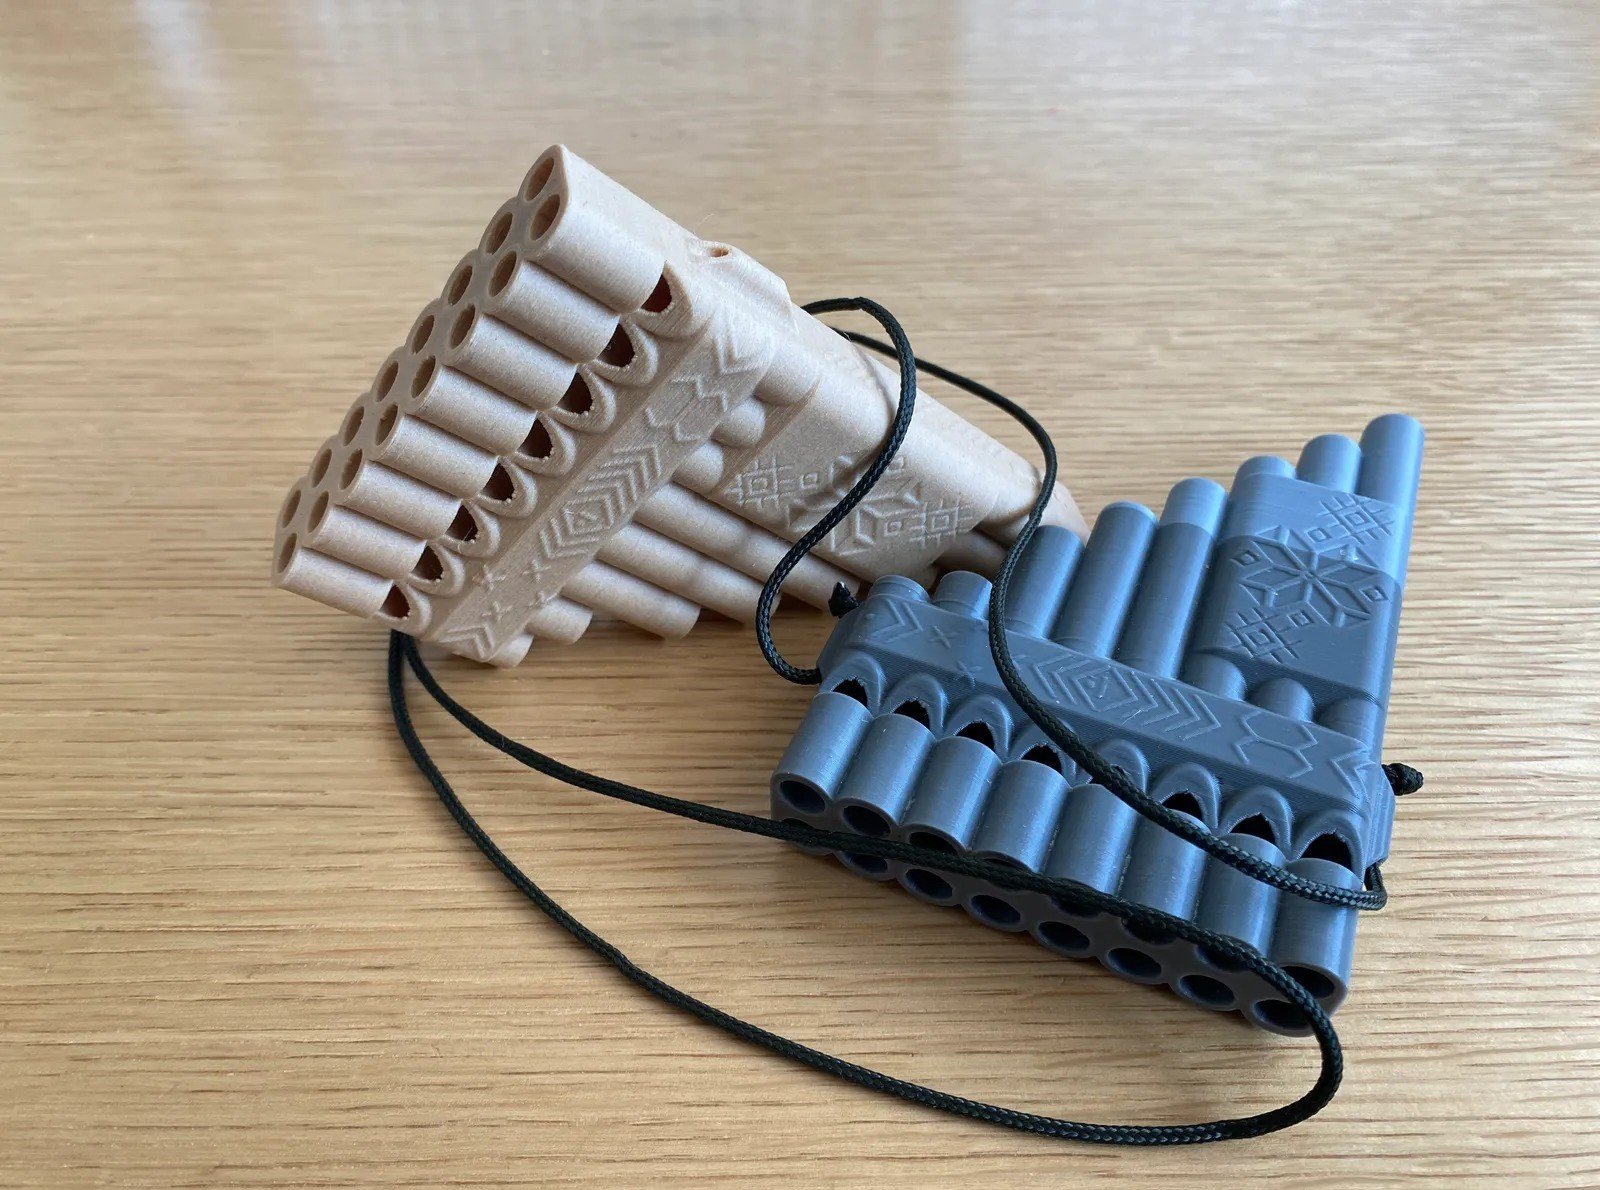 Mouthpiece metal valve 3D model 3D printable